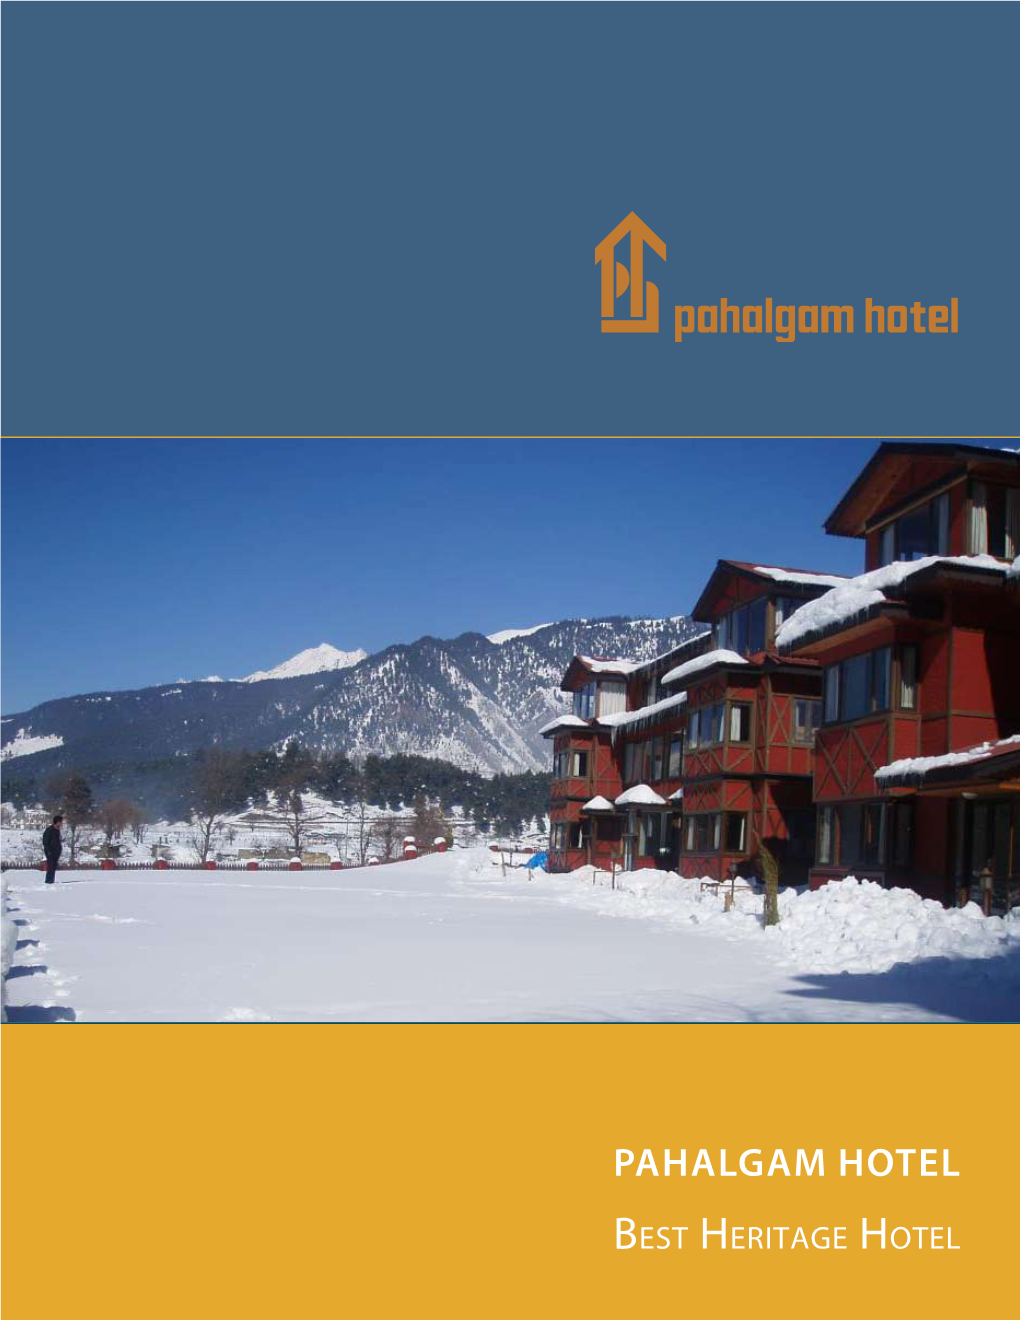 Pahalgam Hotel